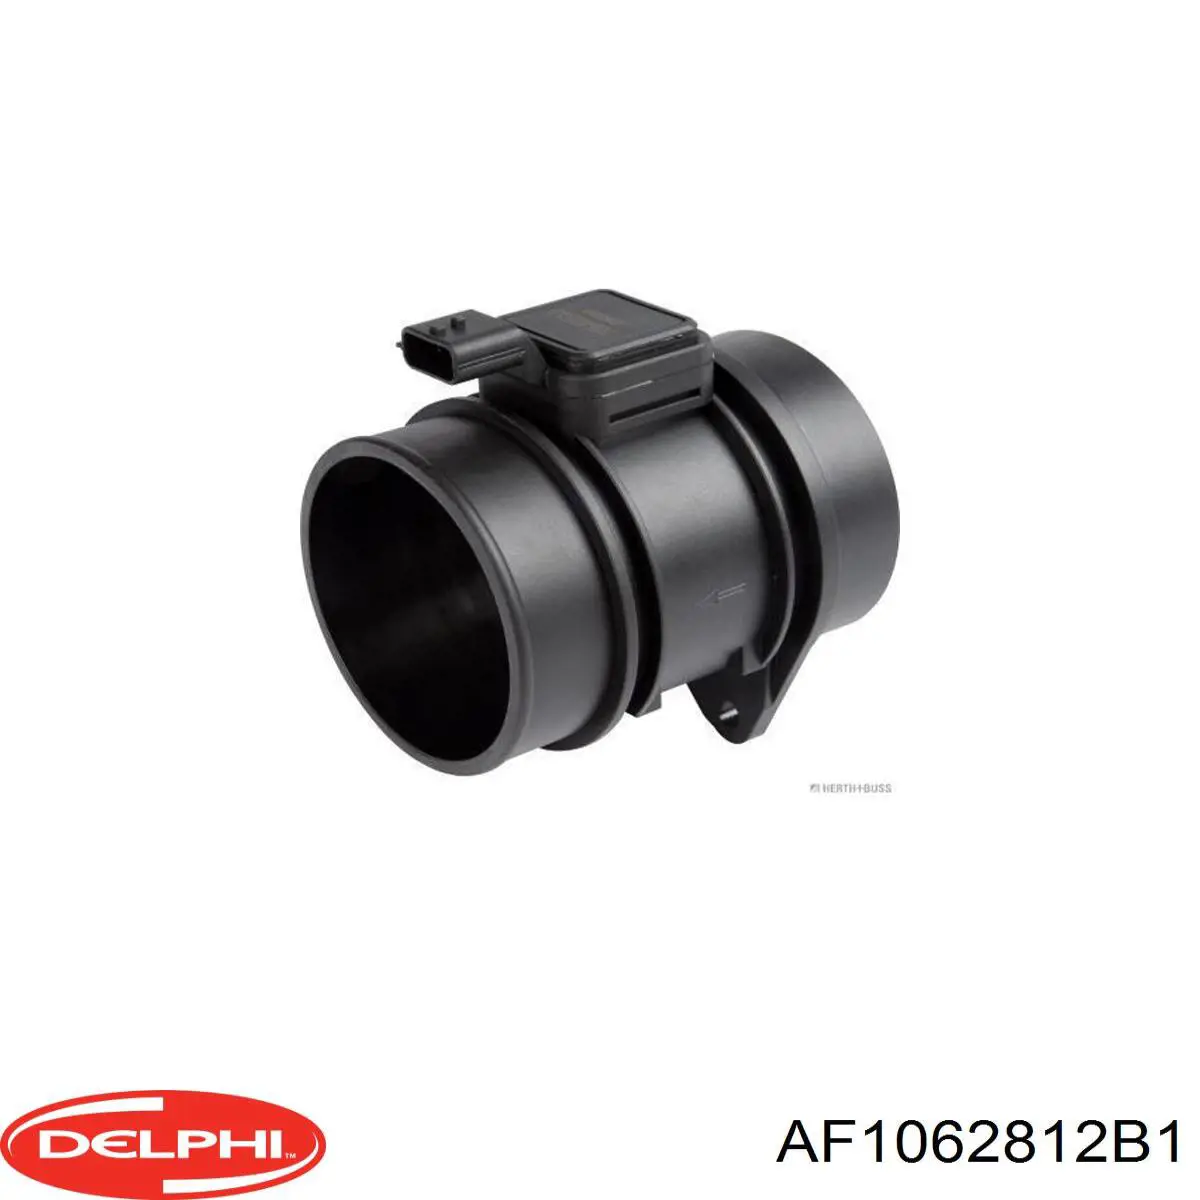 AF1062812B1 Delphi sensor de fluxo (consumo de ar, medidor de consumo M.A.F. - (Mass Airflow))